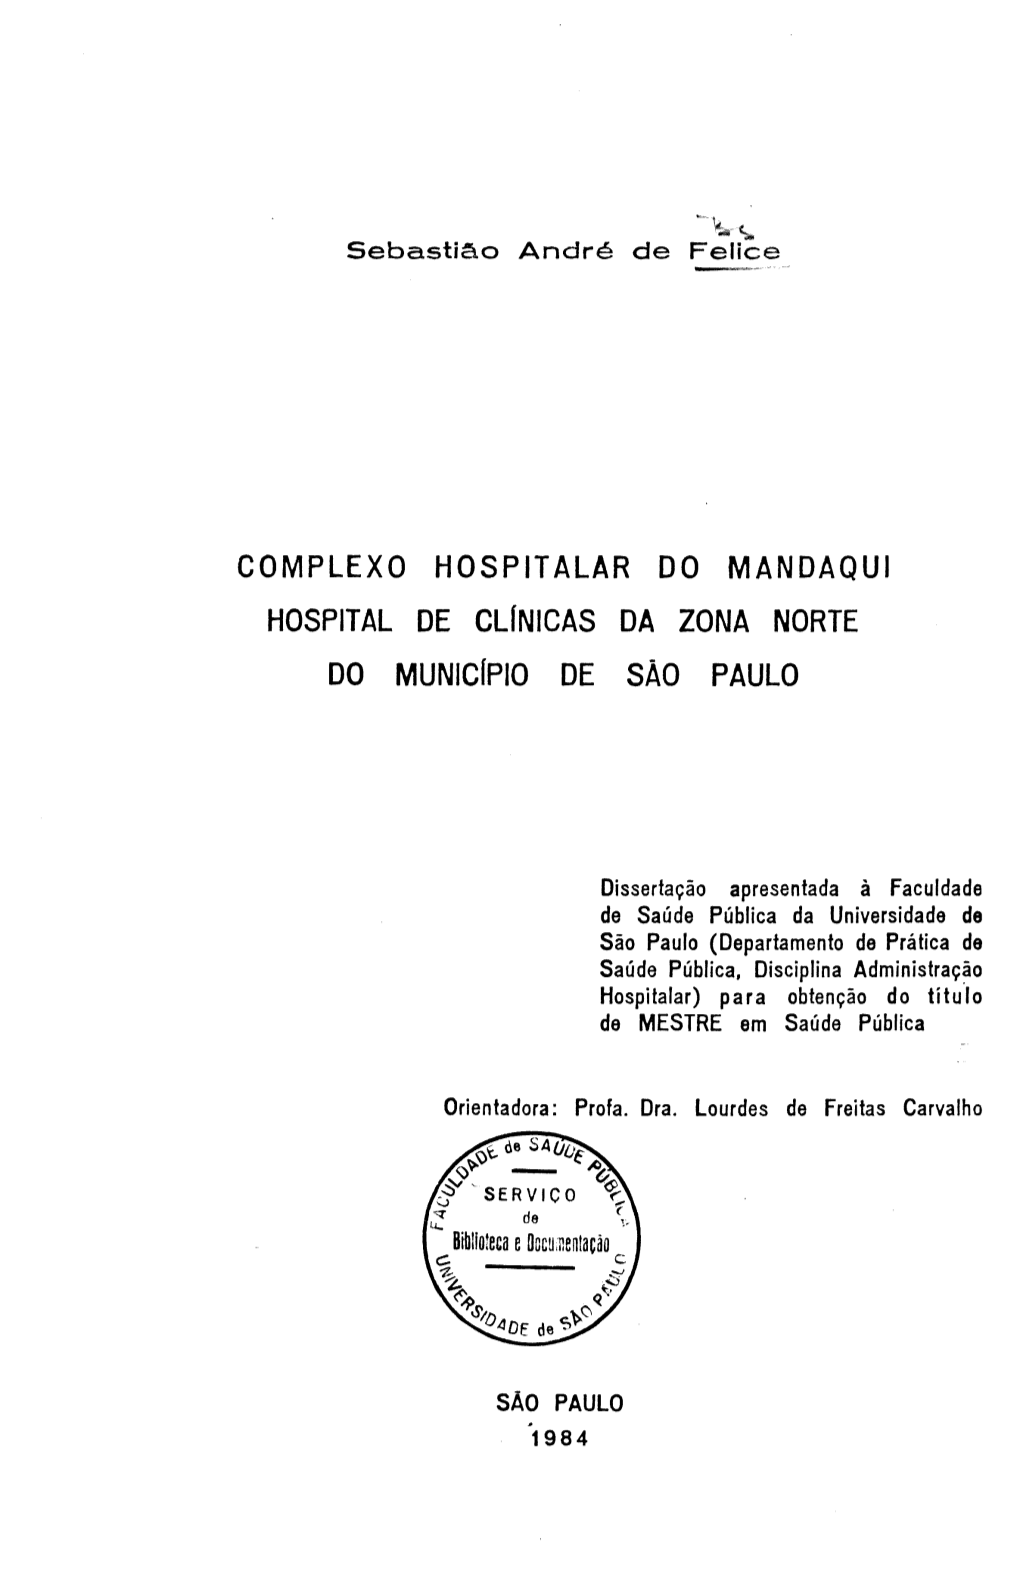 COMPLEXO HOSPITALAR DO MANDAQUI HOSPITAL DE Clfnicas DA ZONA NORTE DO Municfpio DE SÃO PAULO